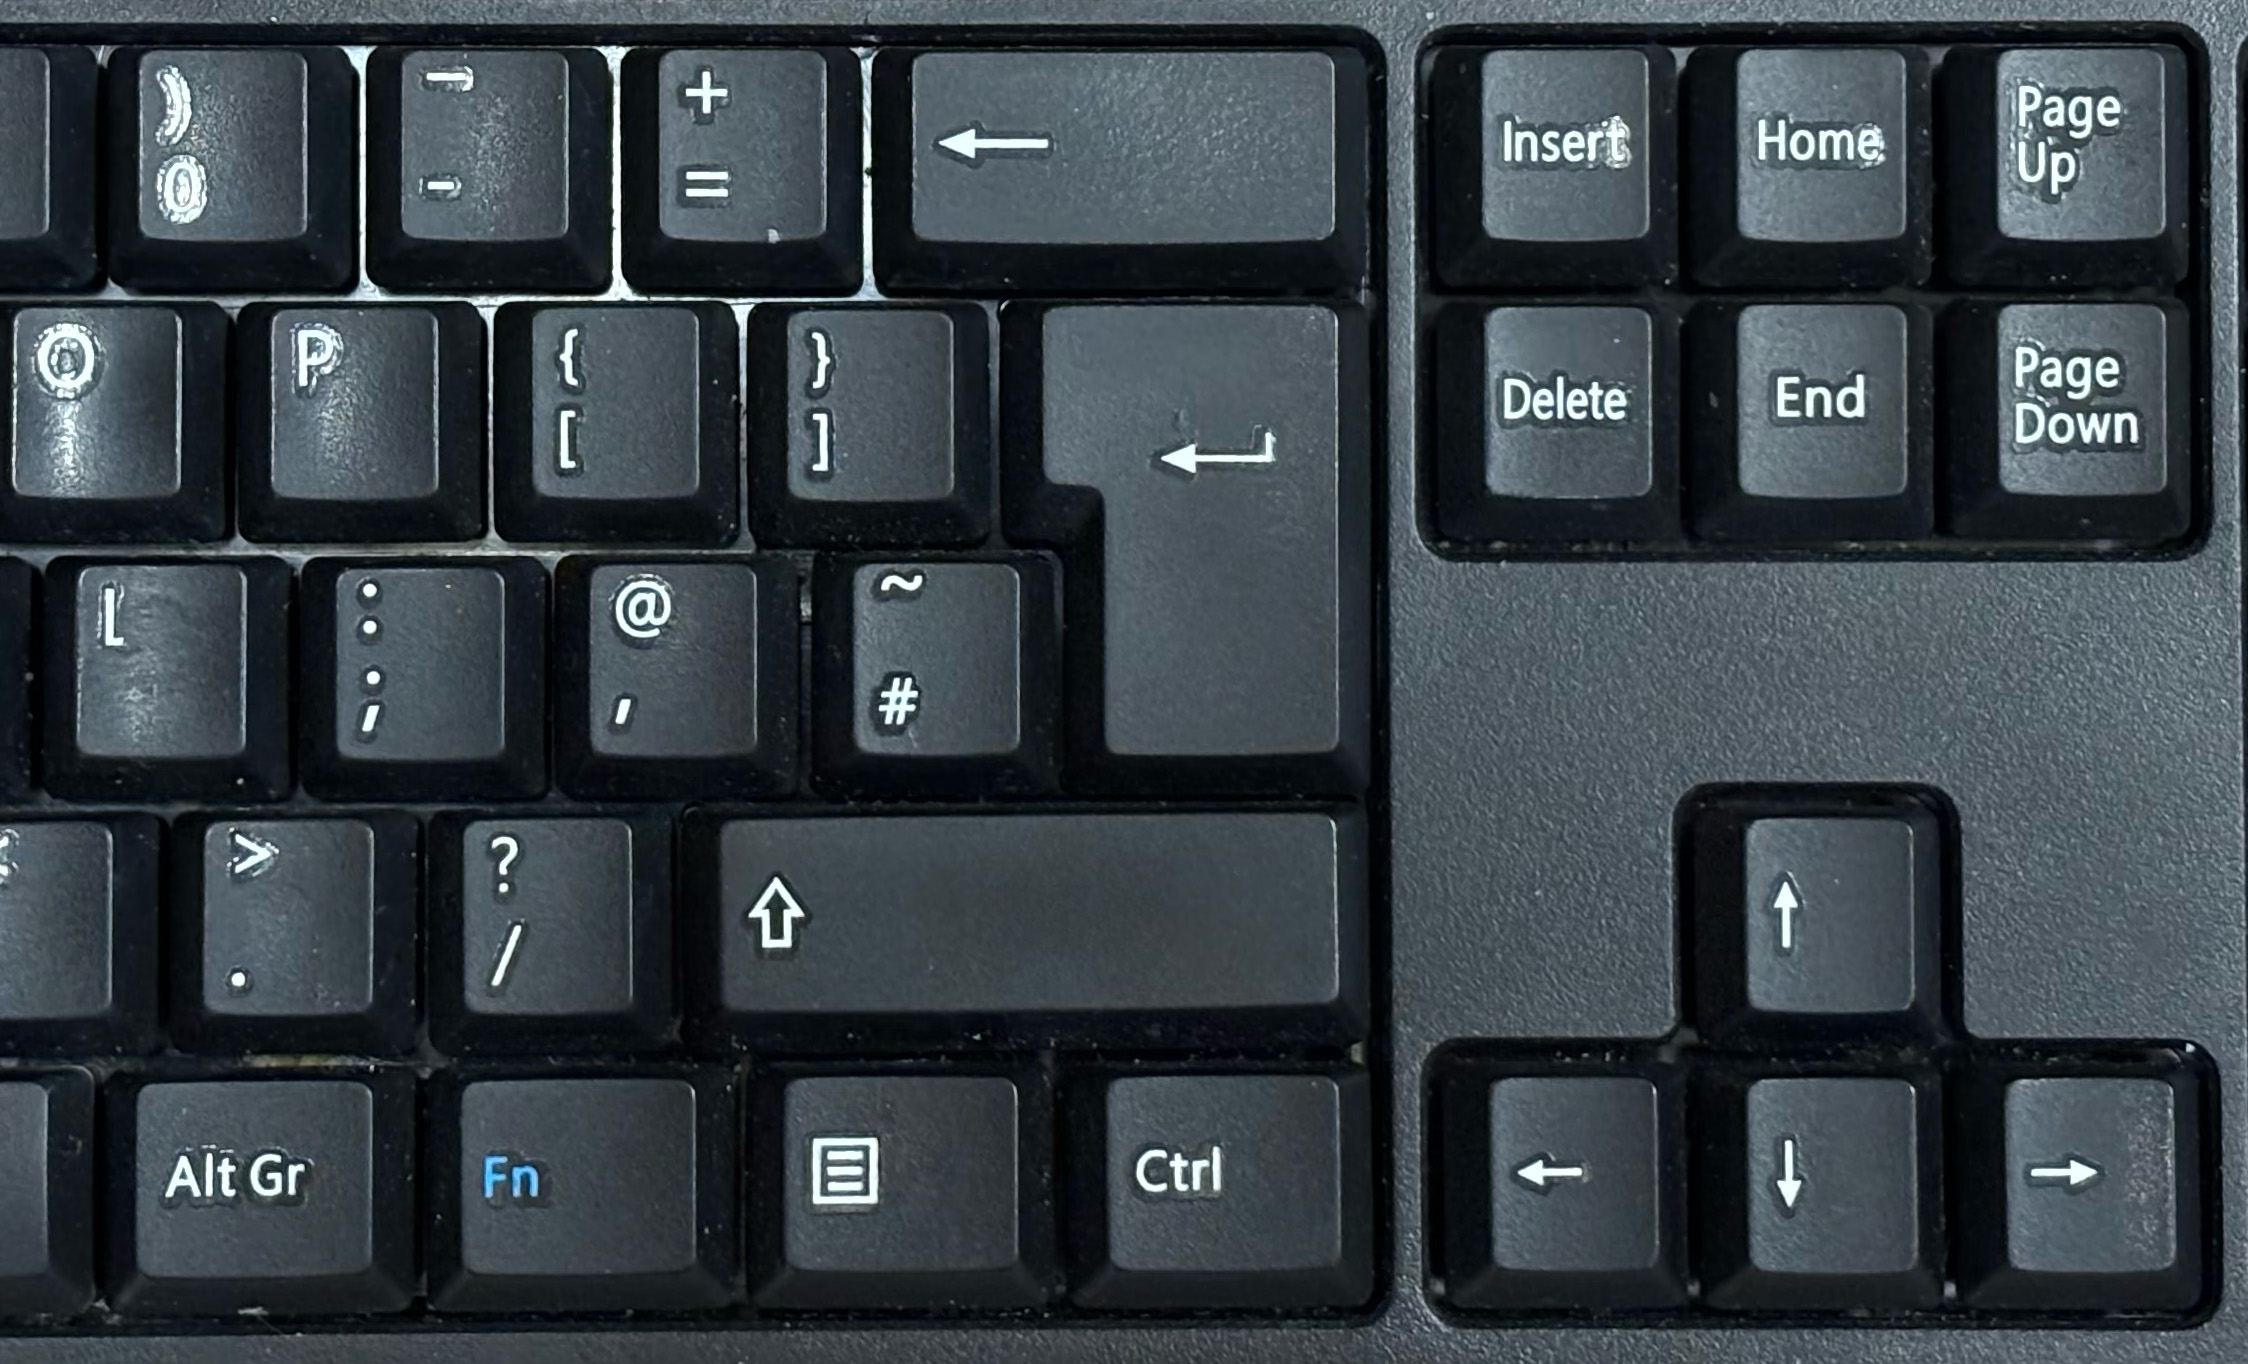 Hash key on UK PC keyboard layout